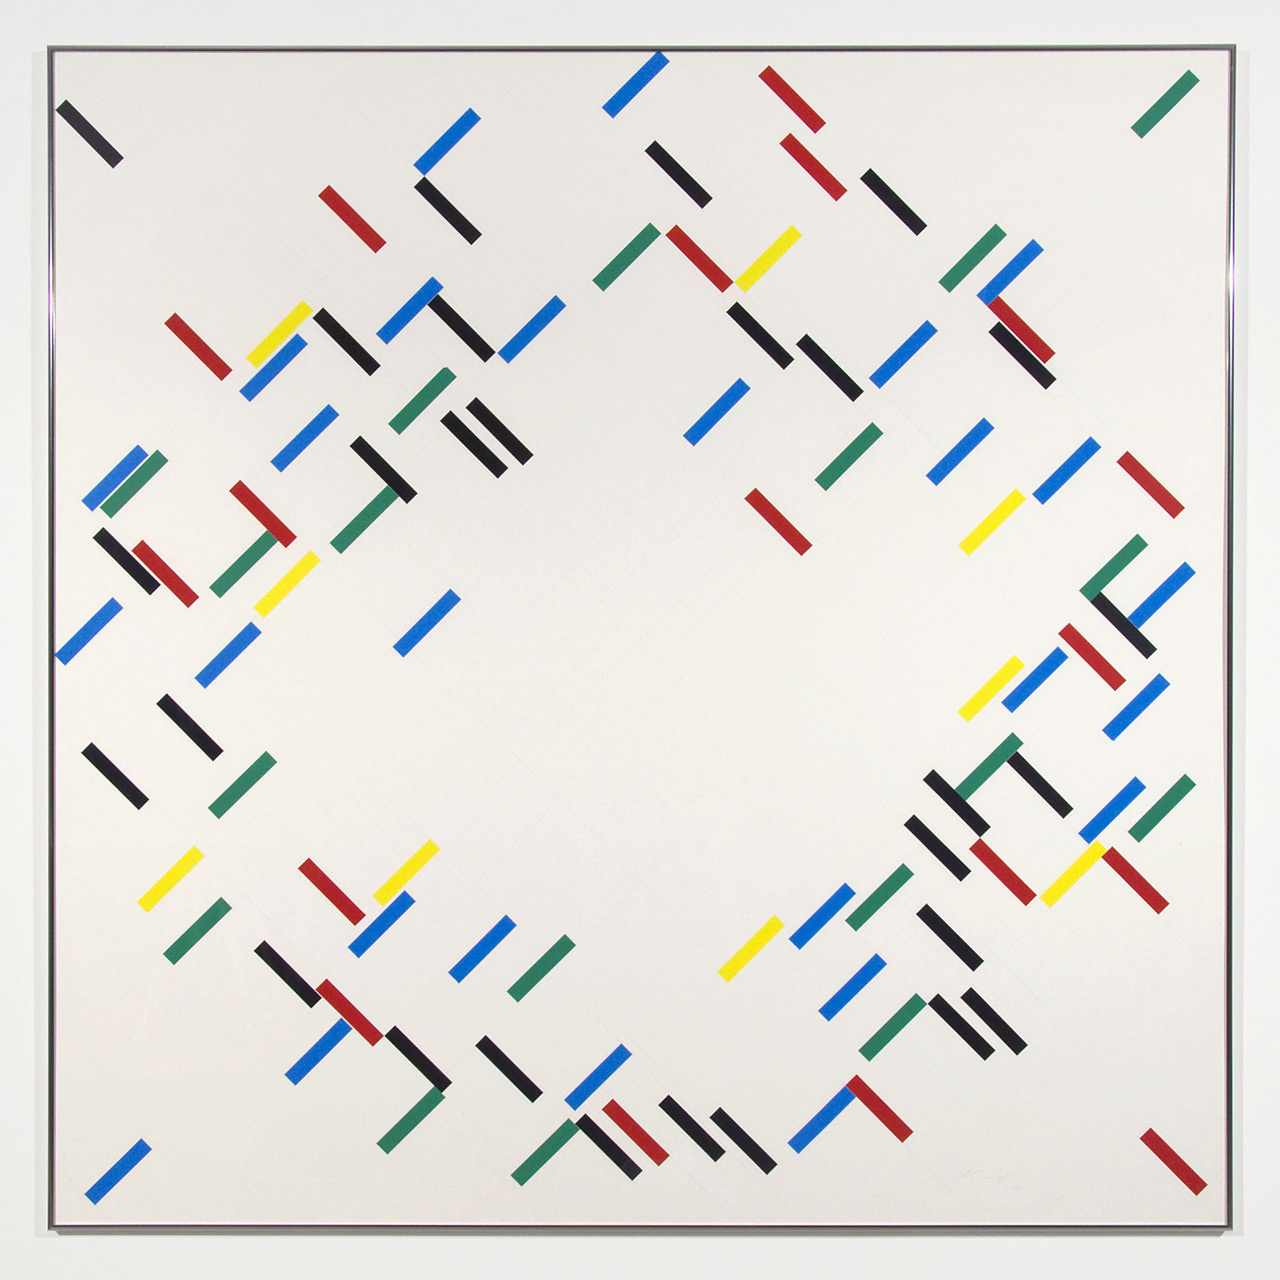 Edgar Knoop, Ohne Titel (Networks), 2007, Collage Klebestreifen, Bleistift auf Papier, 130 x 130 cm, © VG Bild-Kunst, Bonn 2014